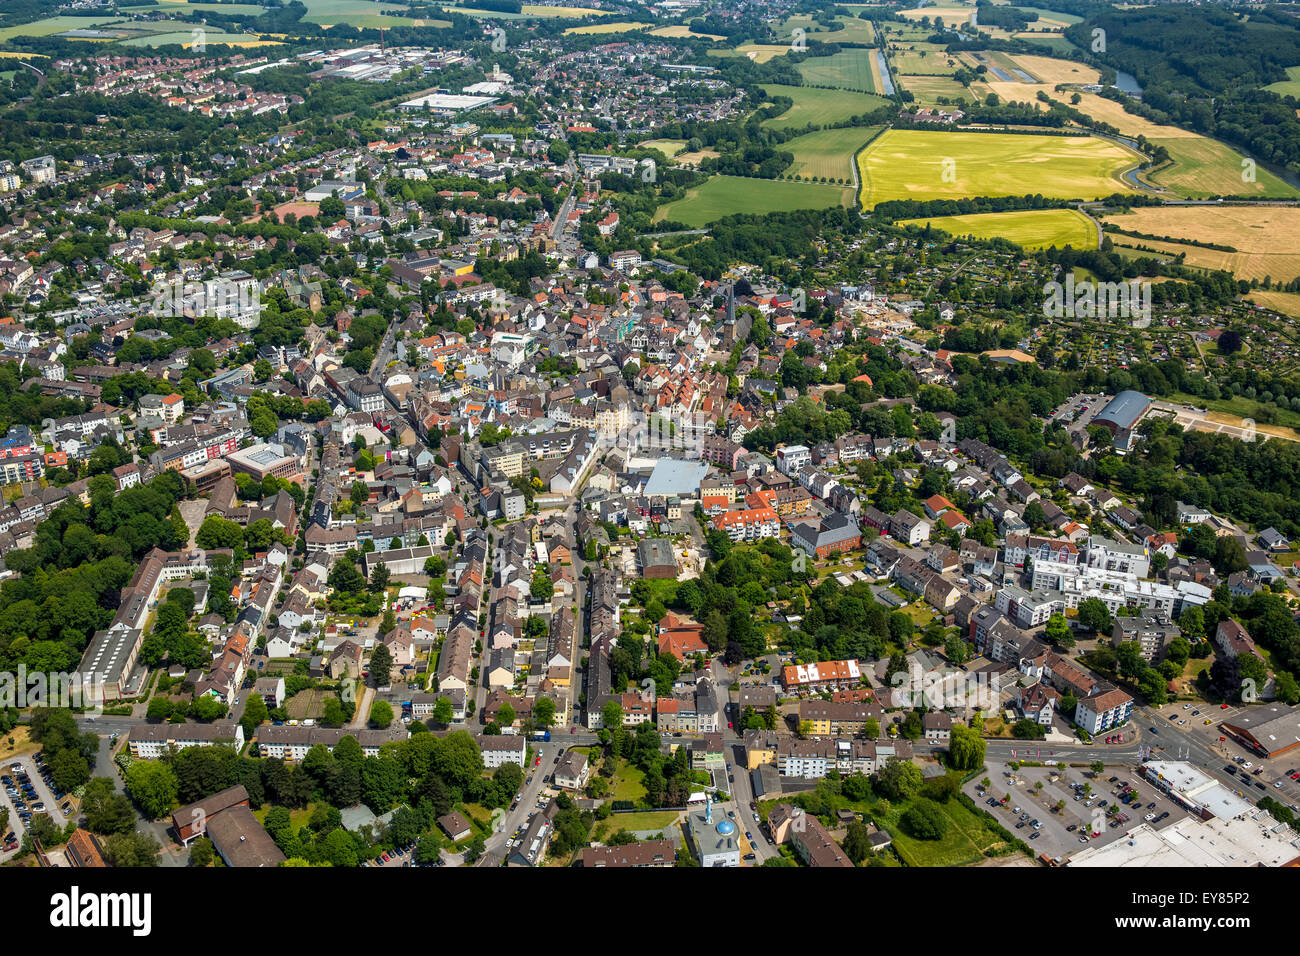 Town centre, Schwerte, Ruhr district, North Rhine-Westphalia, Germany Stock Photo